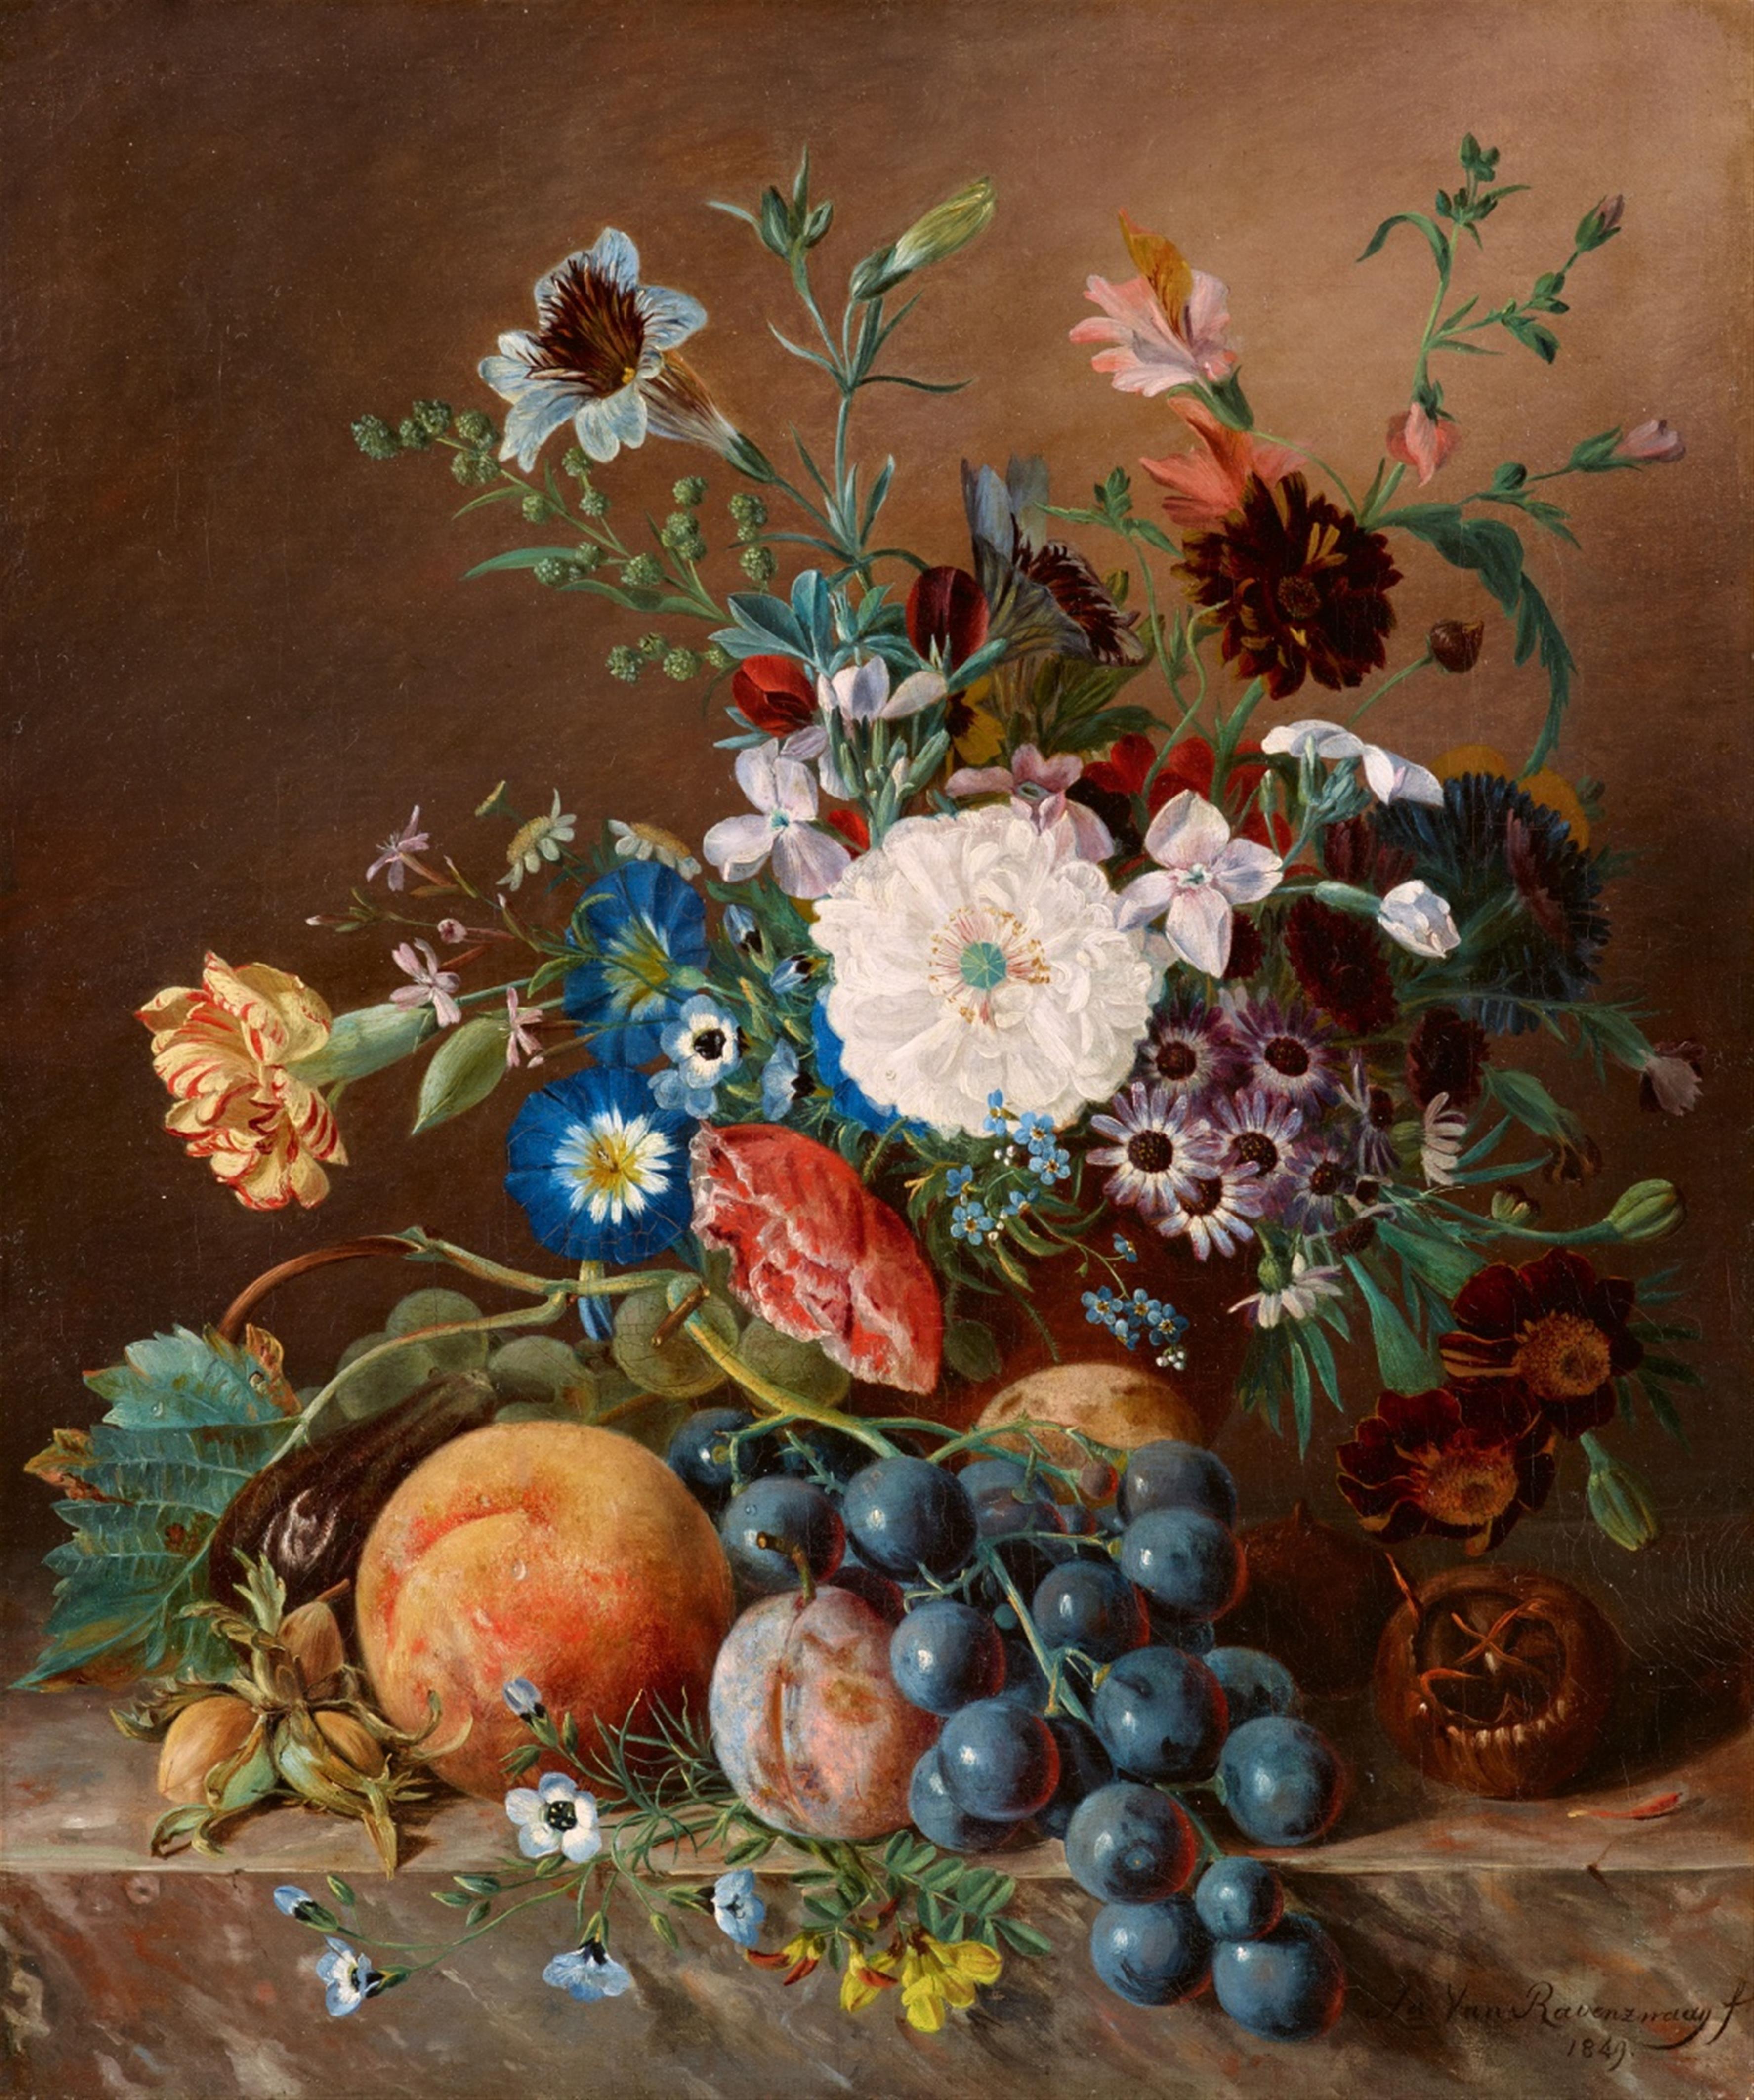 Adriana van  Ravenswaay - Blumen- und Früchtestillleben